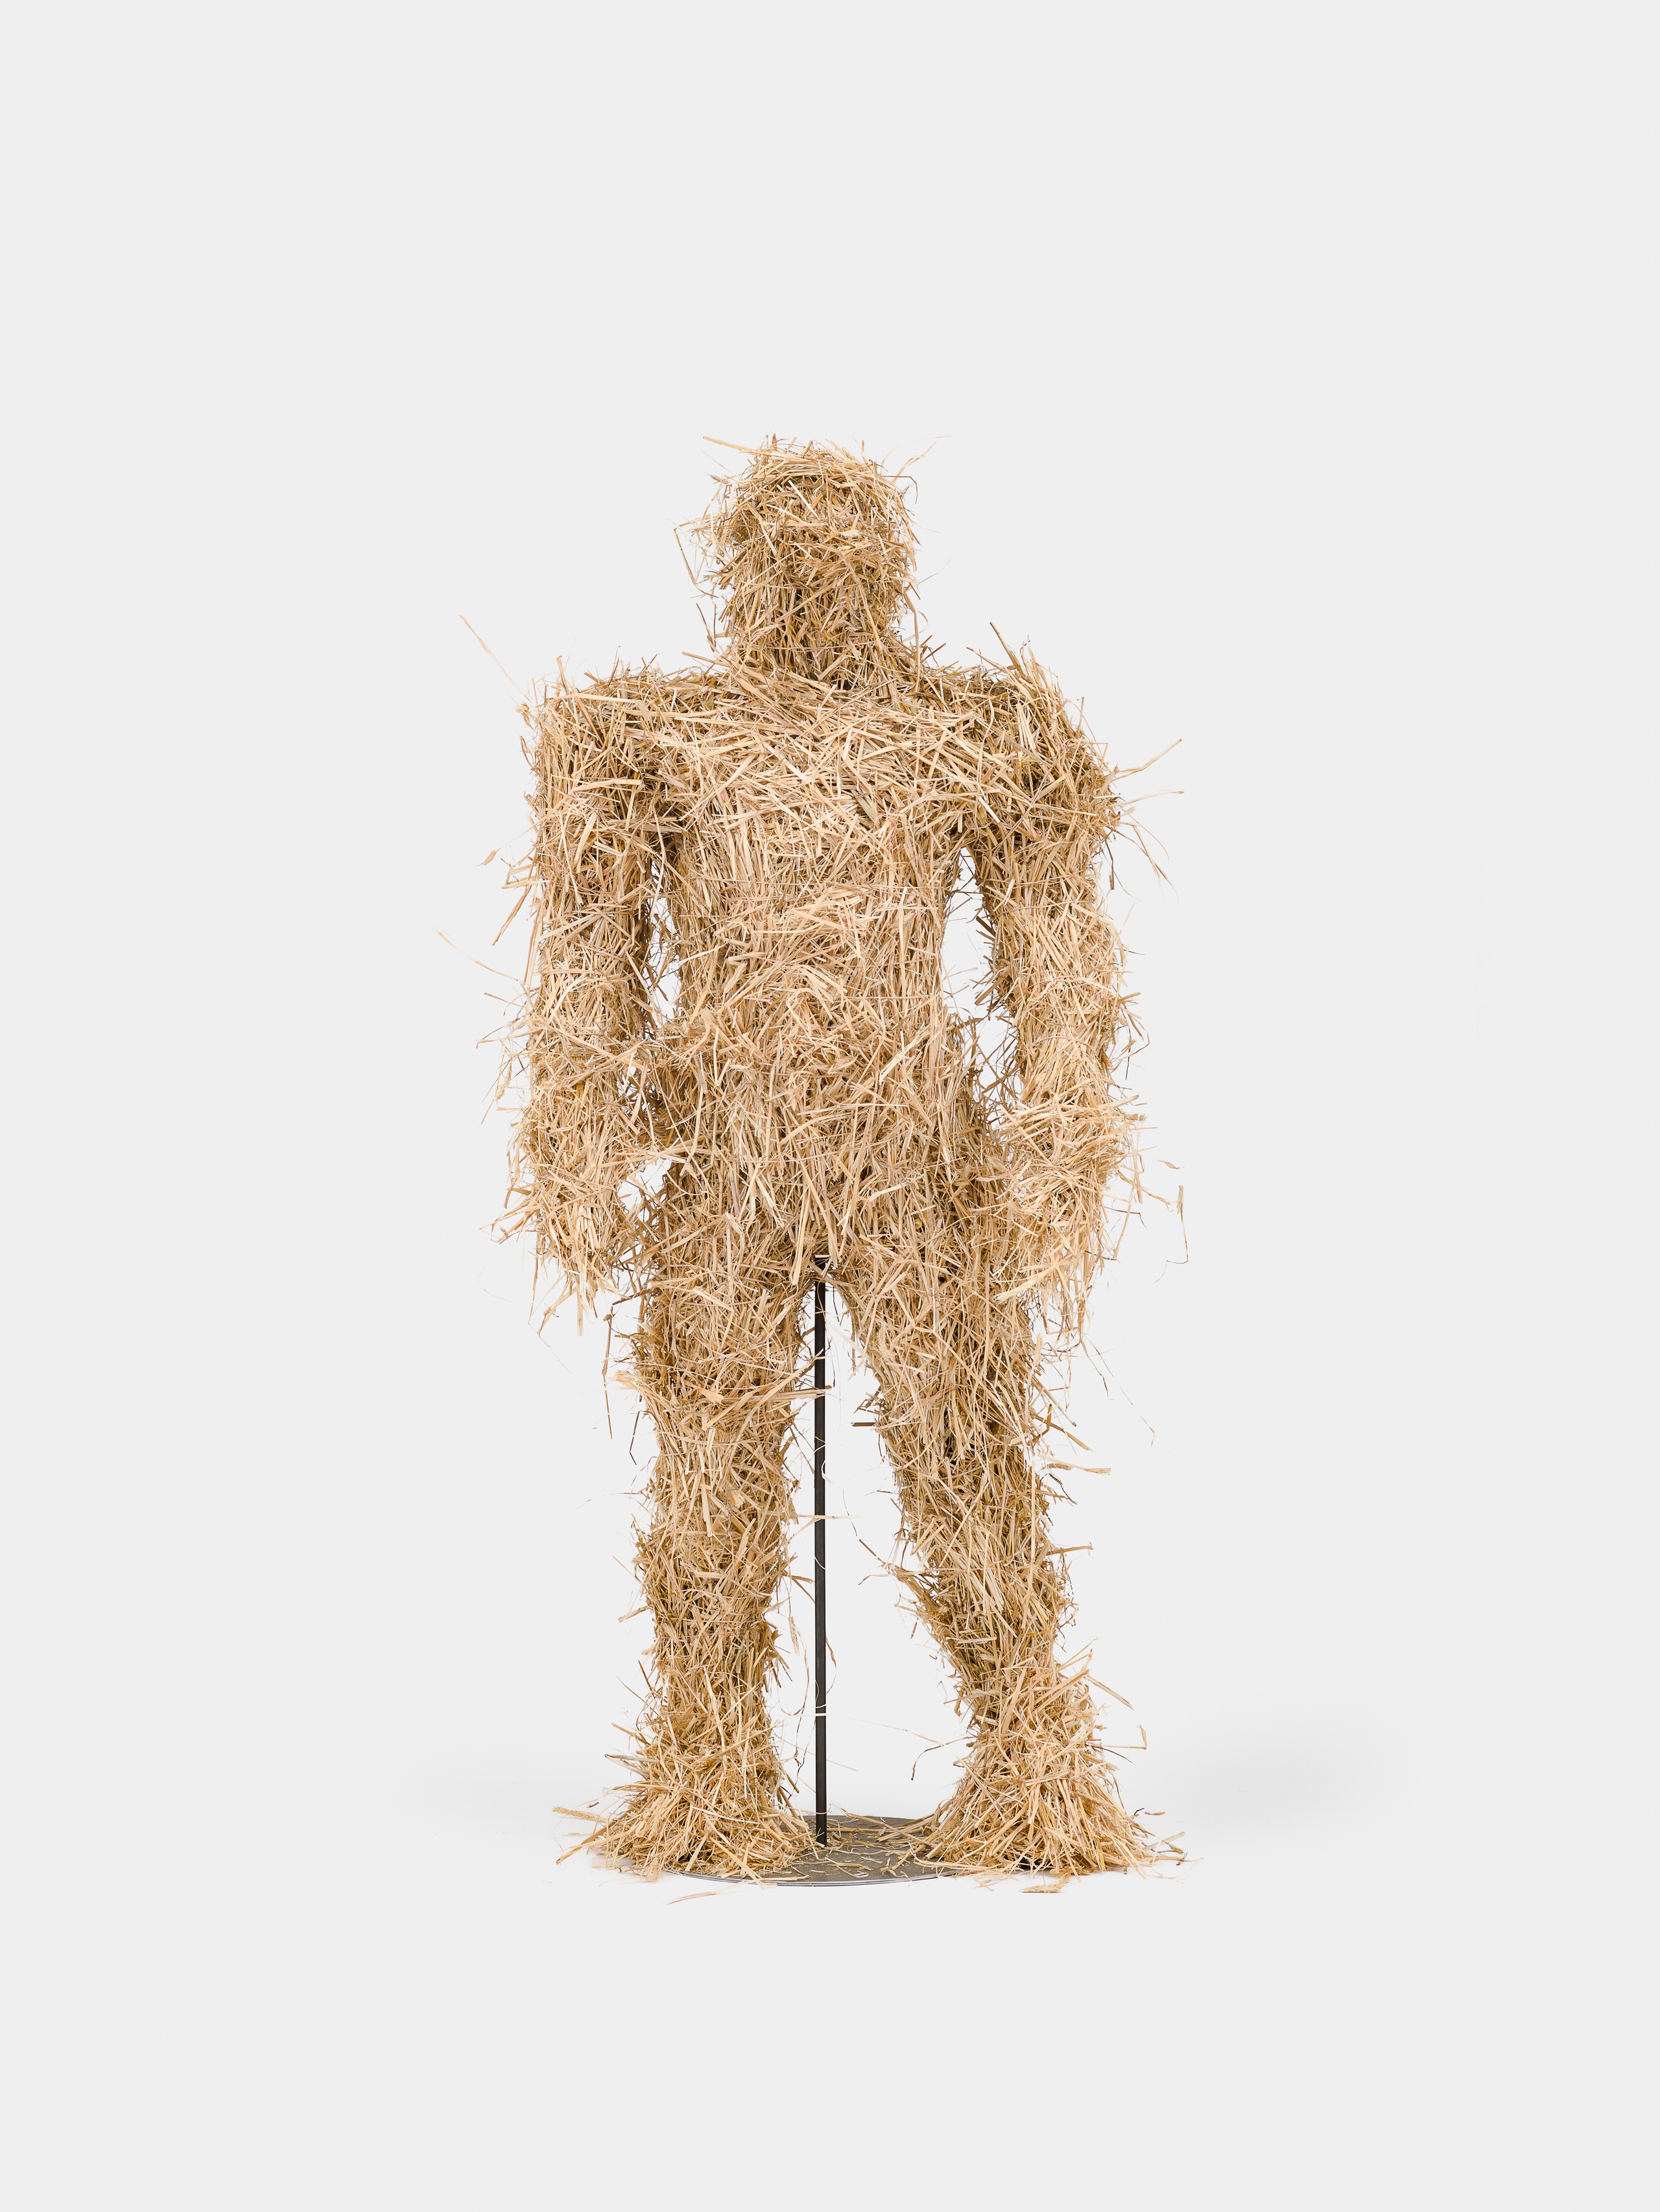 Kaspar Müller, Untitled, 2022, Straw, fiberglass, wood, steel 195 x 90 x 65 cm, 77 x 35 1/2 x 25 1/2 in